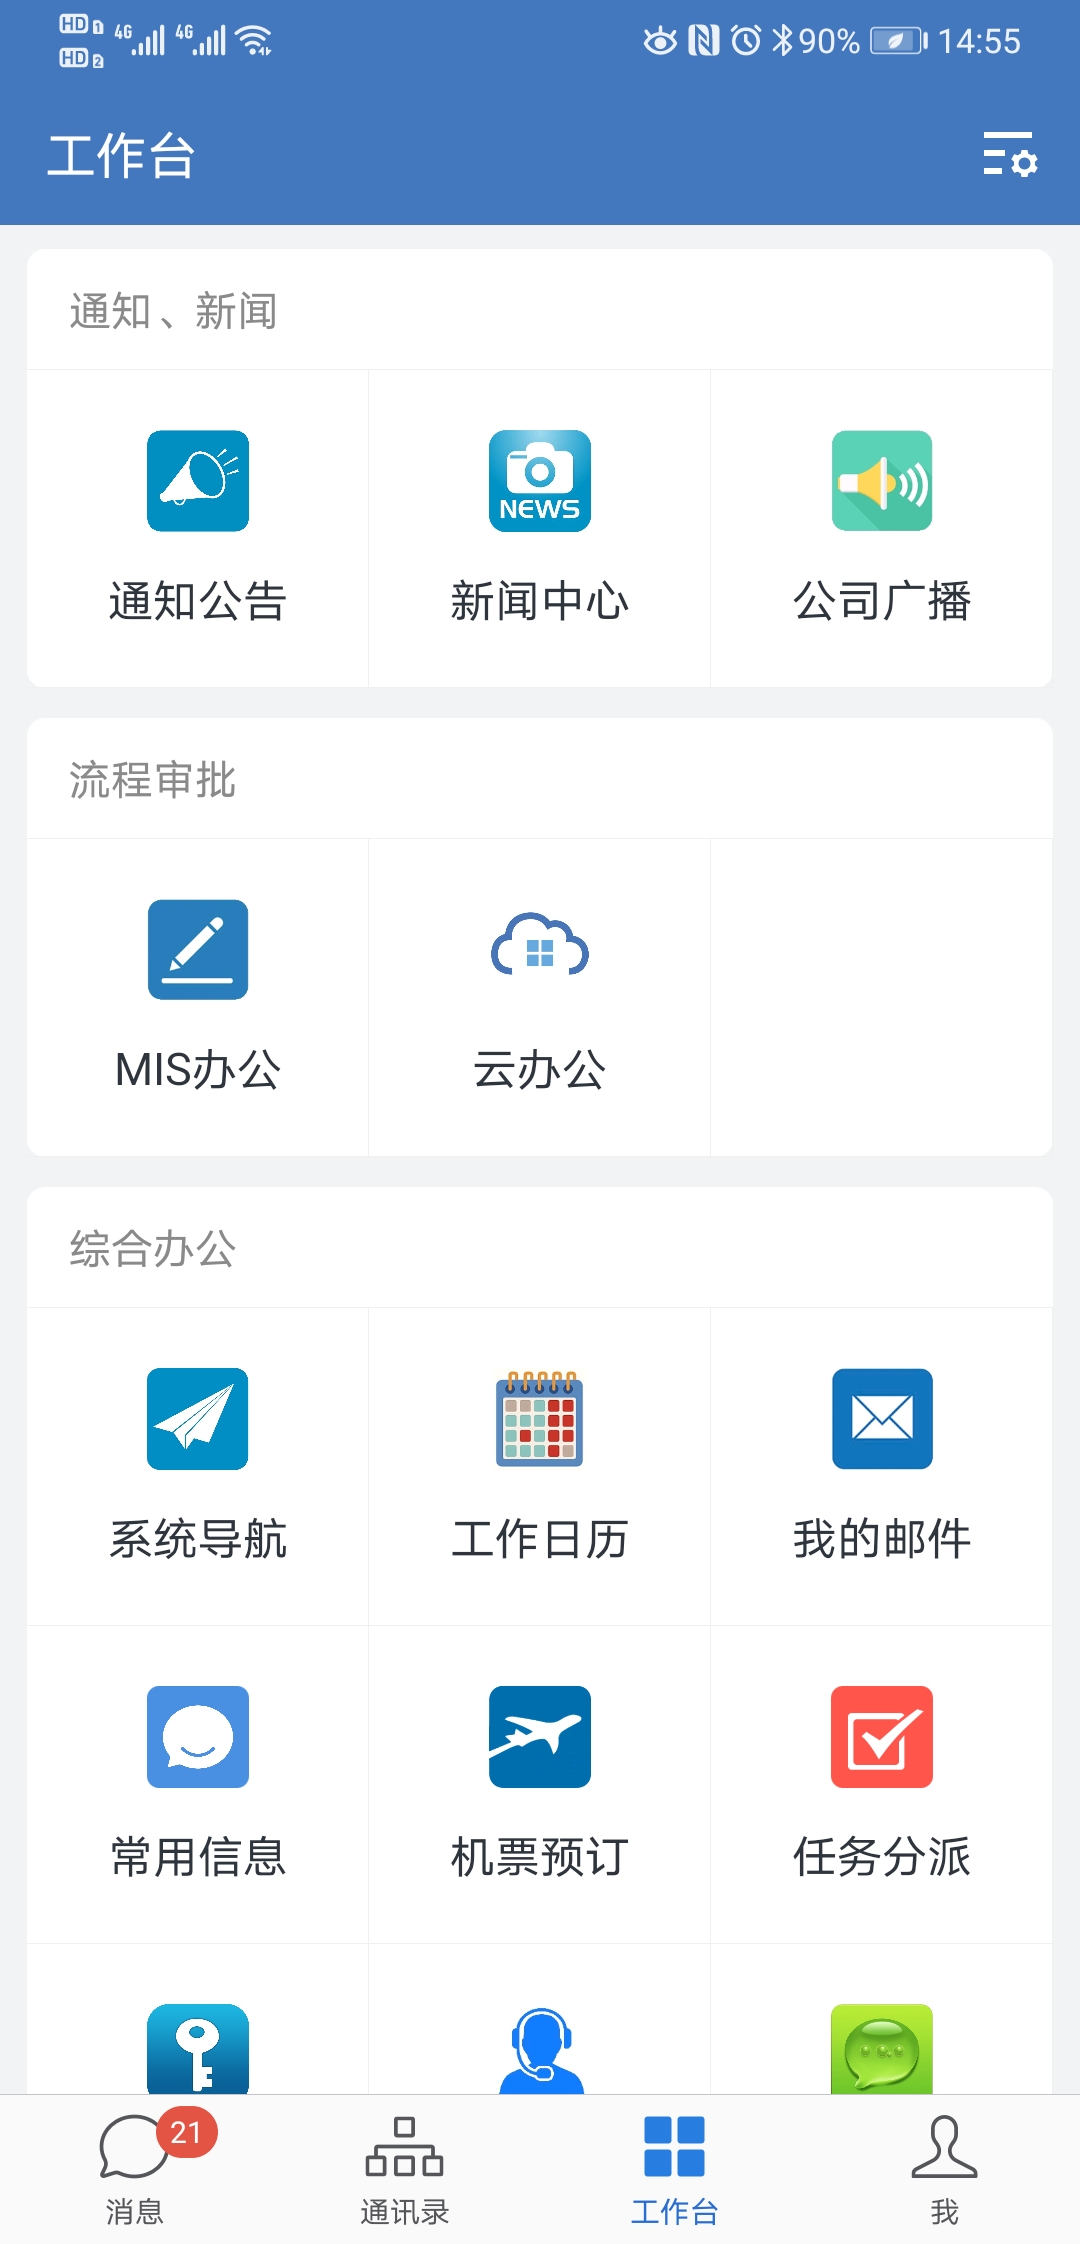 中国电建XX院-企业微信移动门户系统